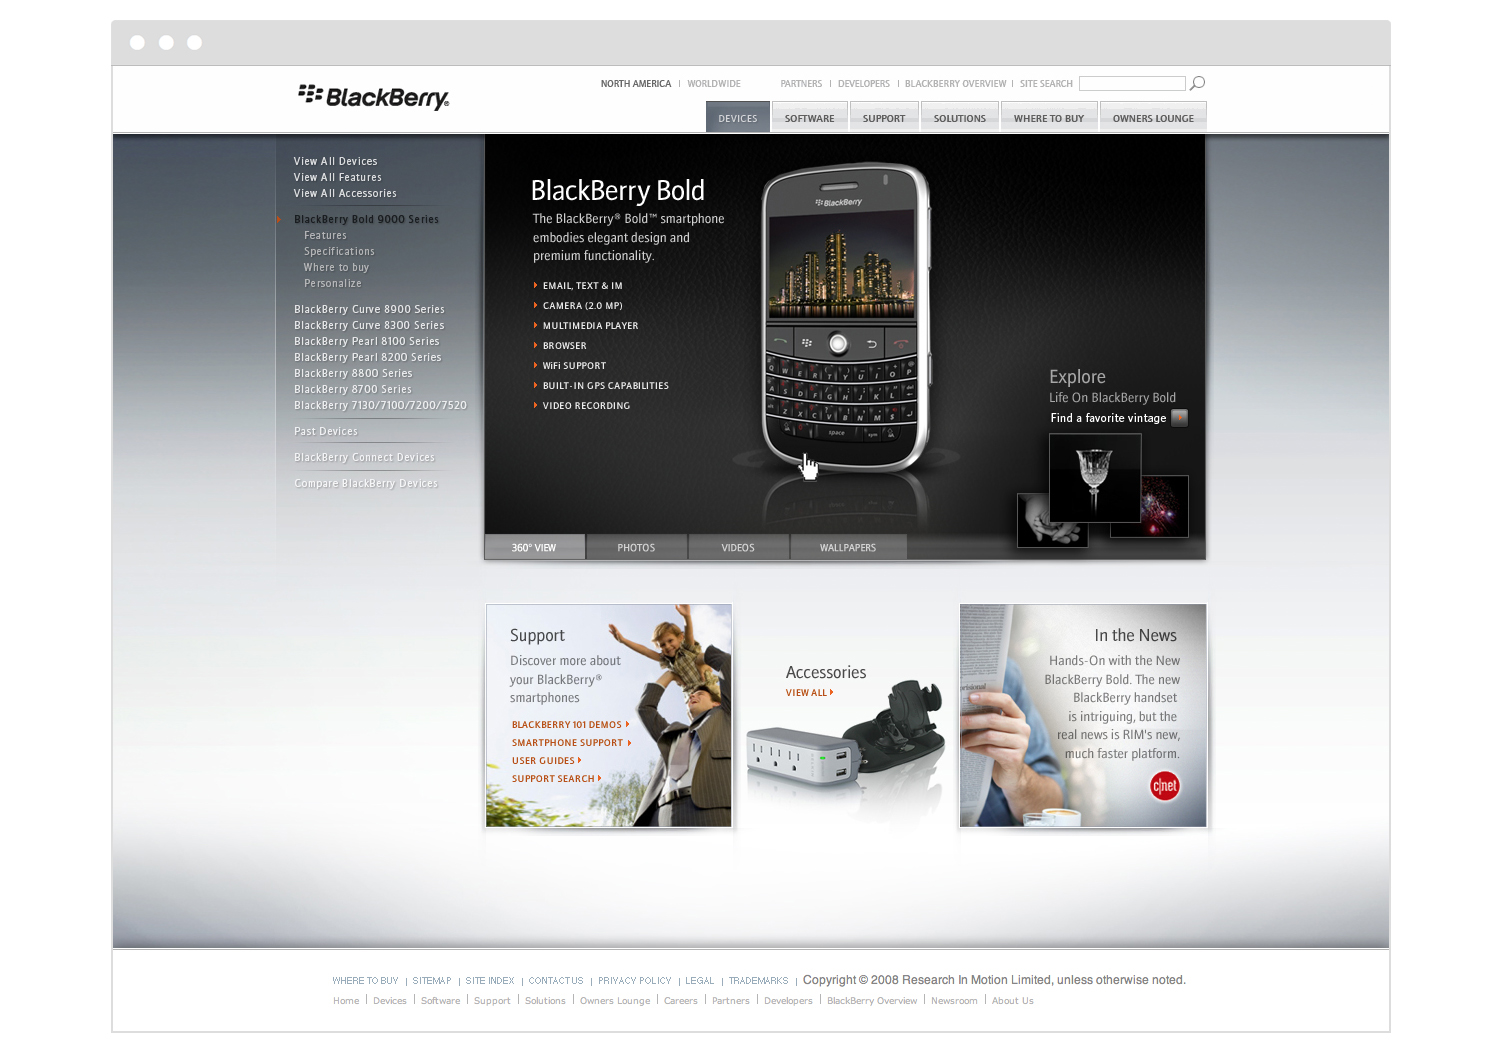 blackberry_microsite_browser_window-2.jpg